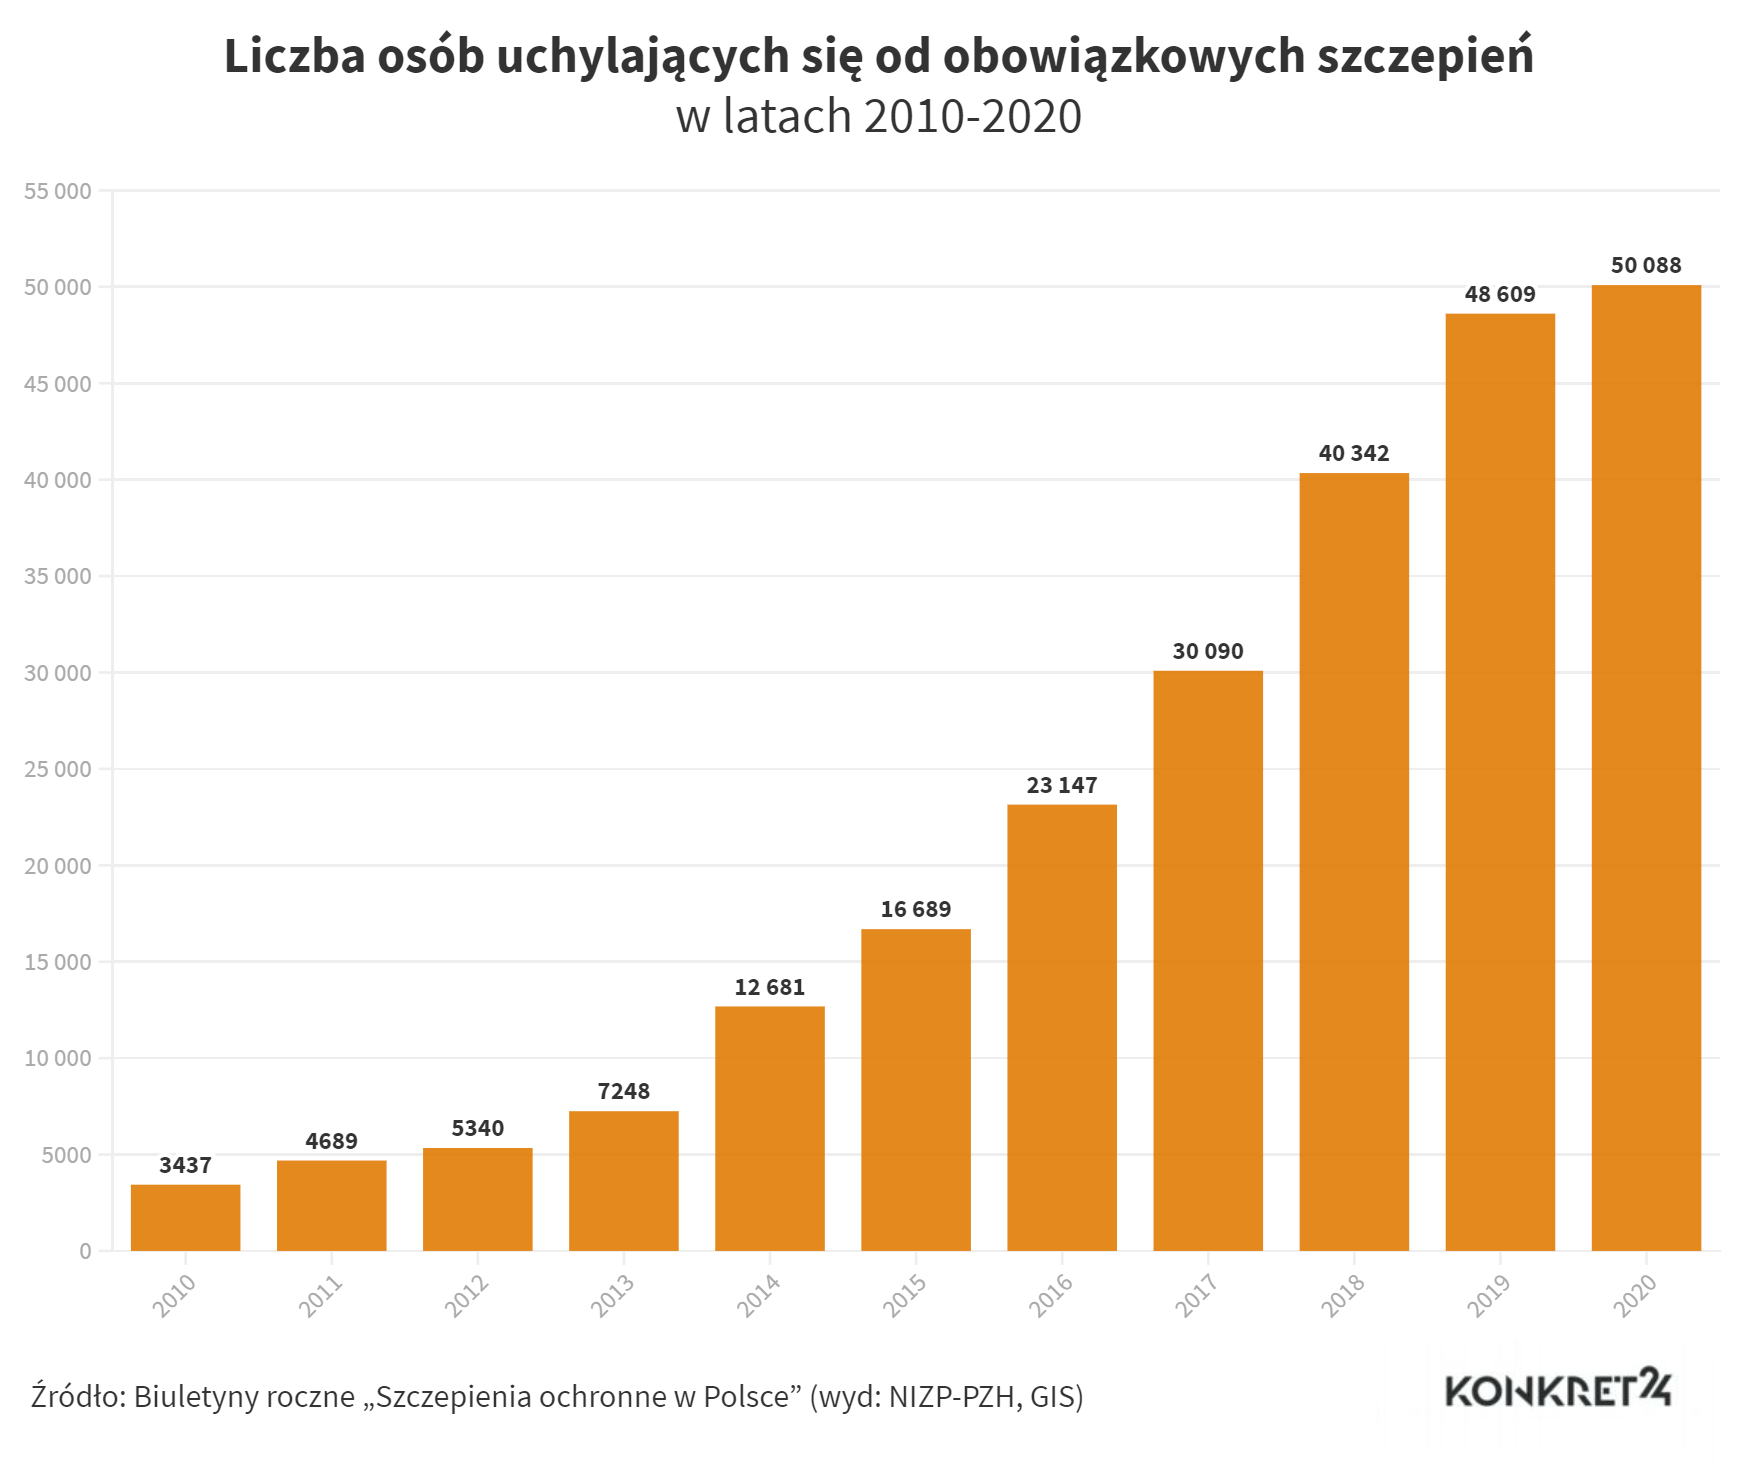 Liczba osób uchylających się od obowiązkowych szczepień w Polsce w latach 2010-2020